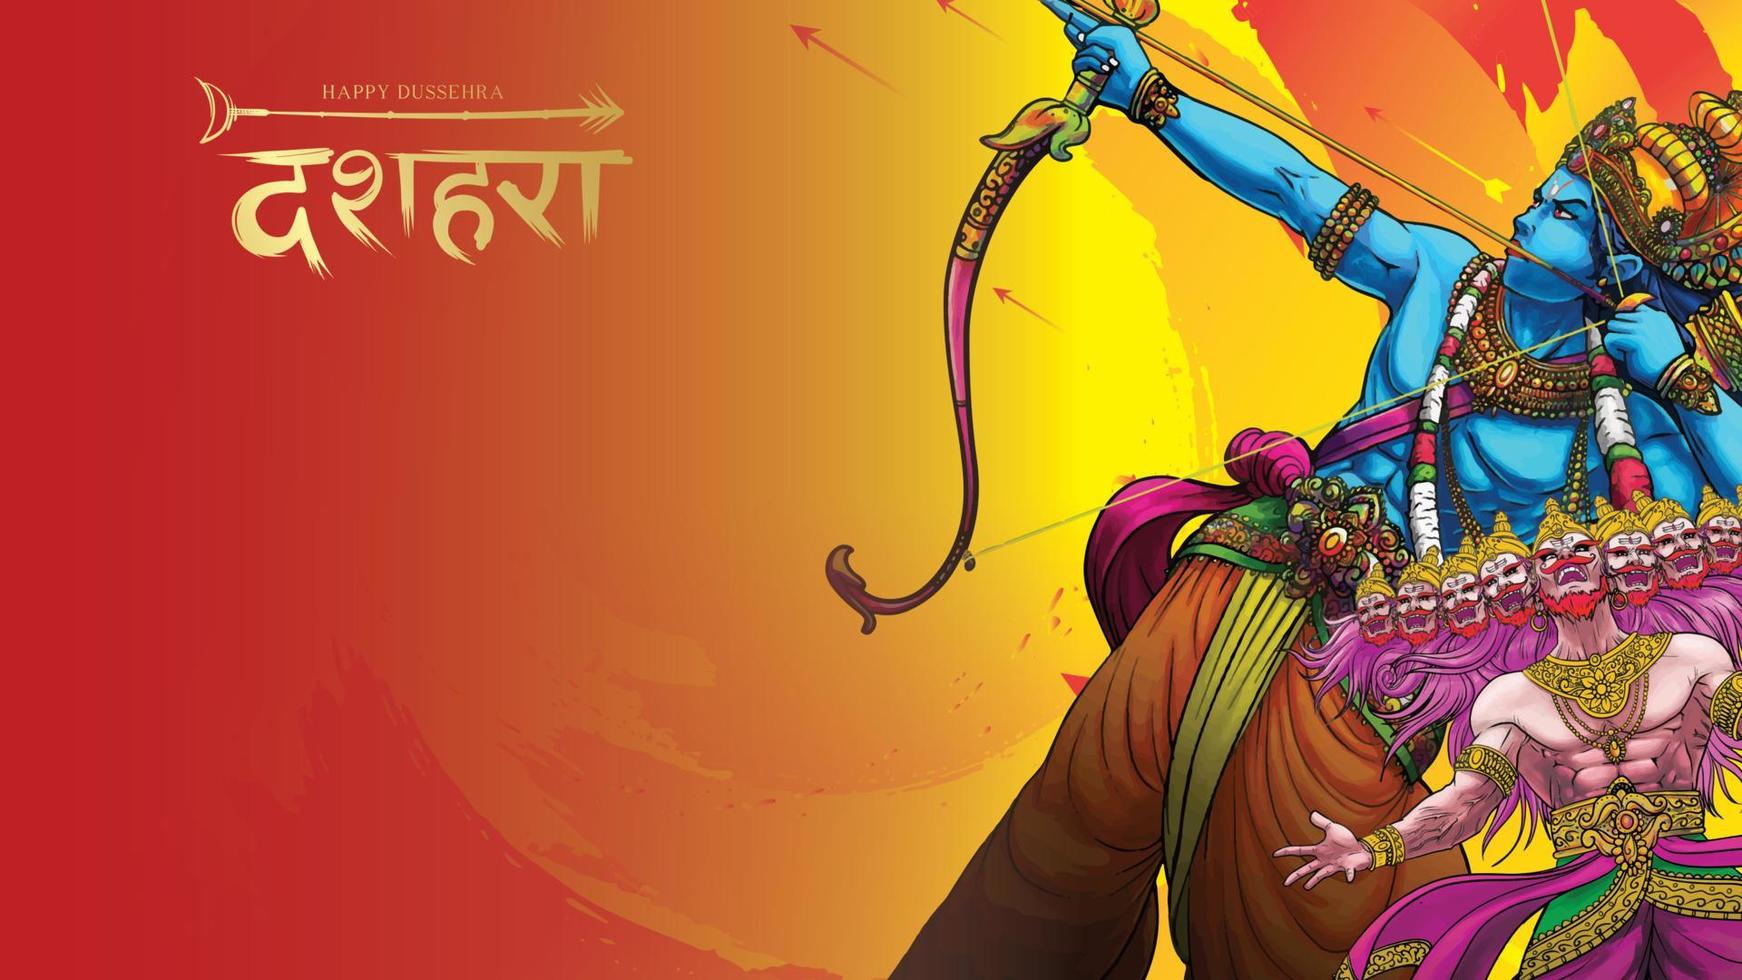 lord rama dödar ravana i glad dussehra navratri affischfestival i Indien. översättning dussehra vektor